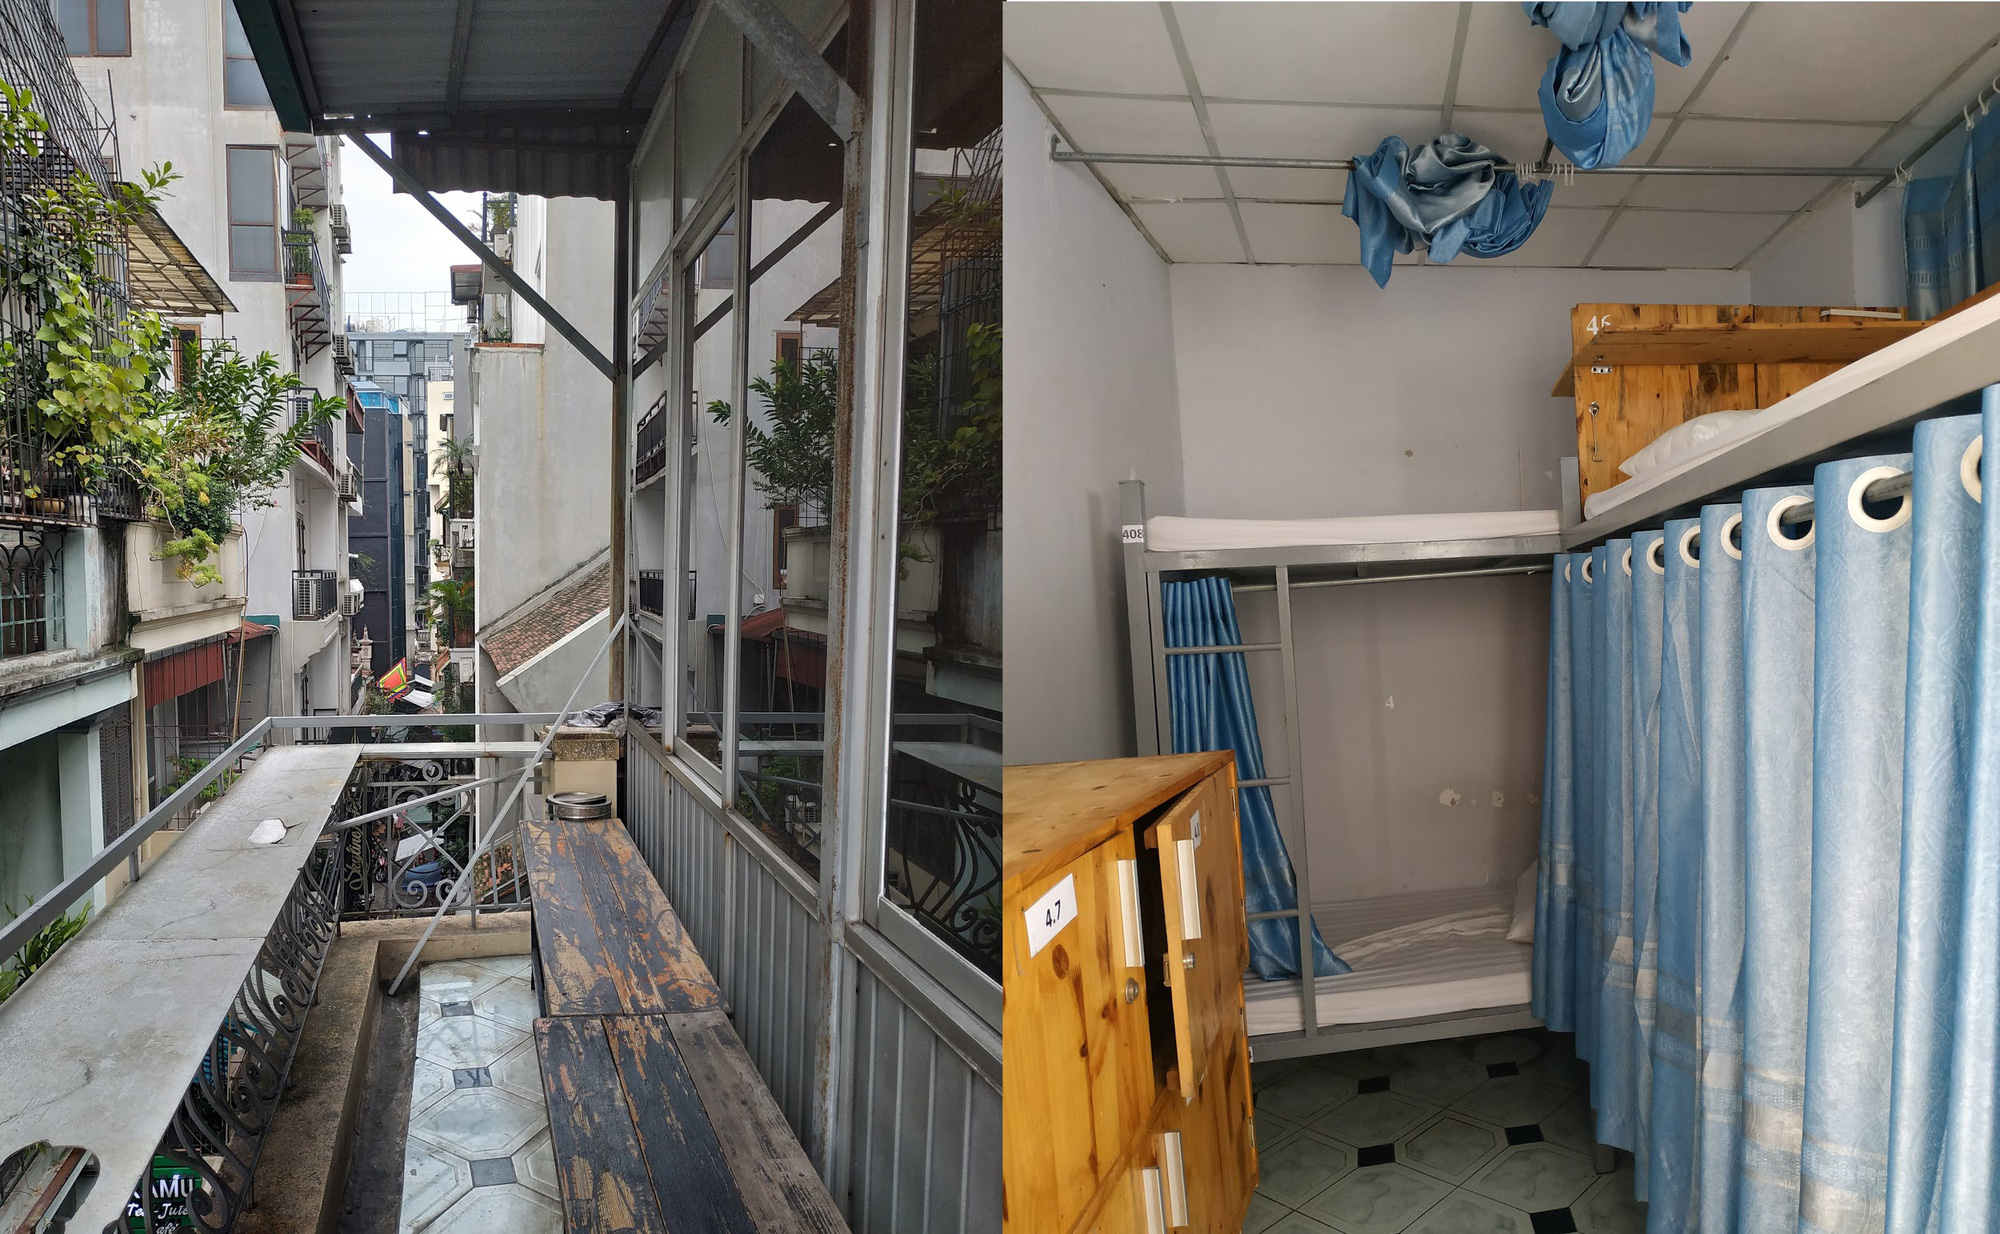 Nhà phố cổ cũ kỹ ở Hà Nội “lột xác” bất ngờ như khách sạn sau khi cải tạo - Ảnh 1.